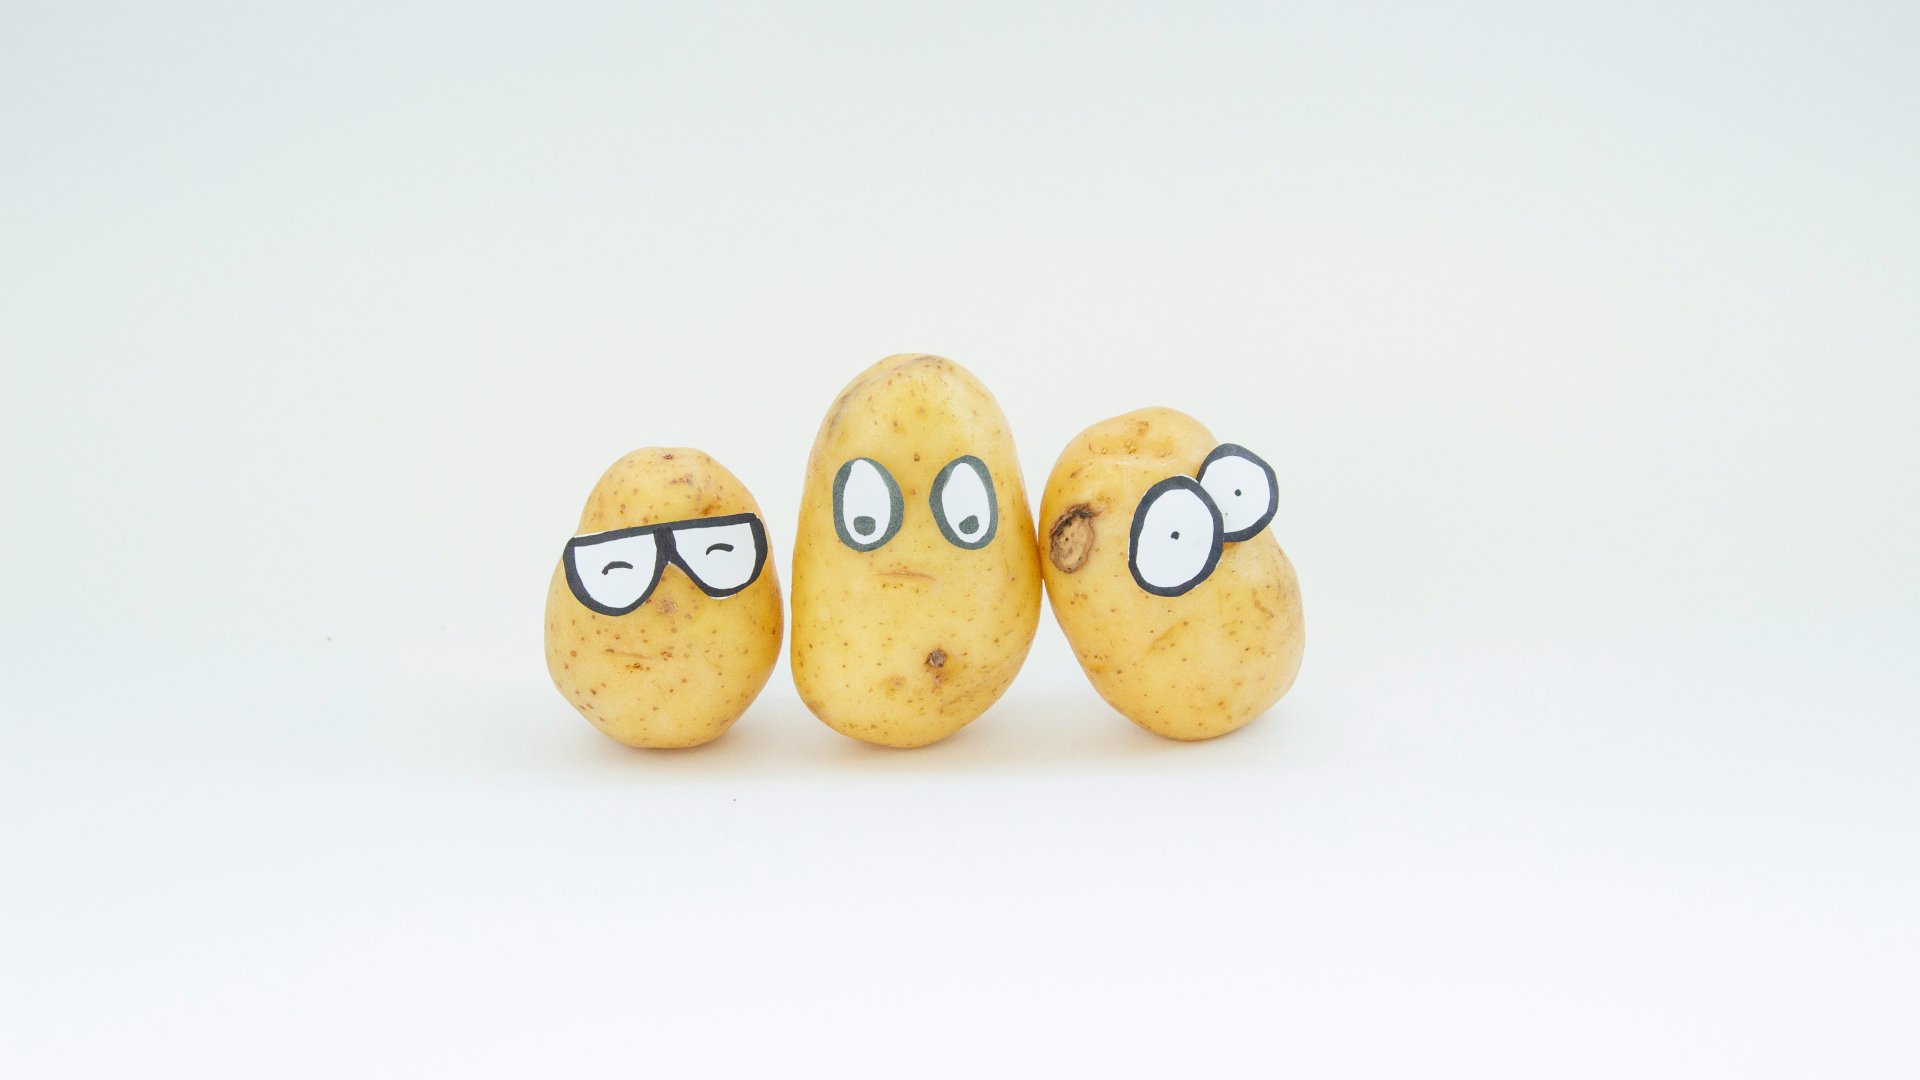 Három krumpli rájuk ragasztott szemekkel.